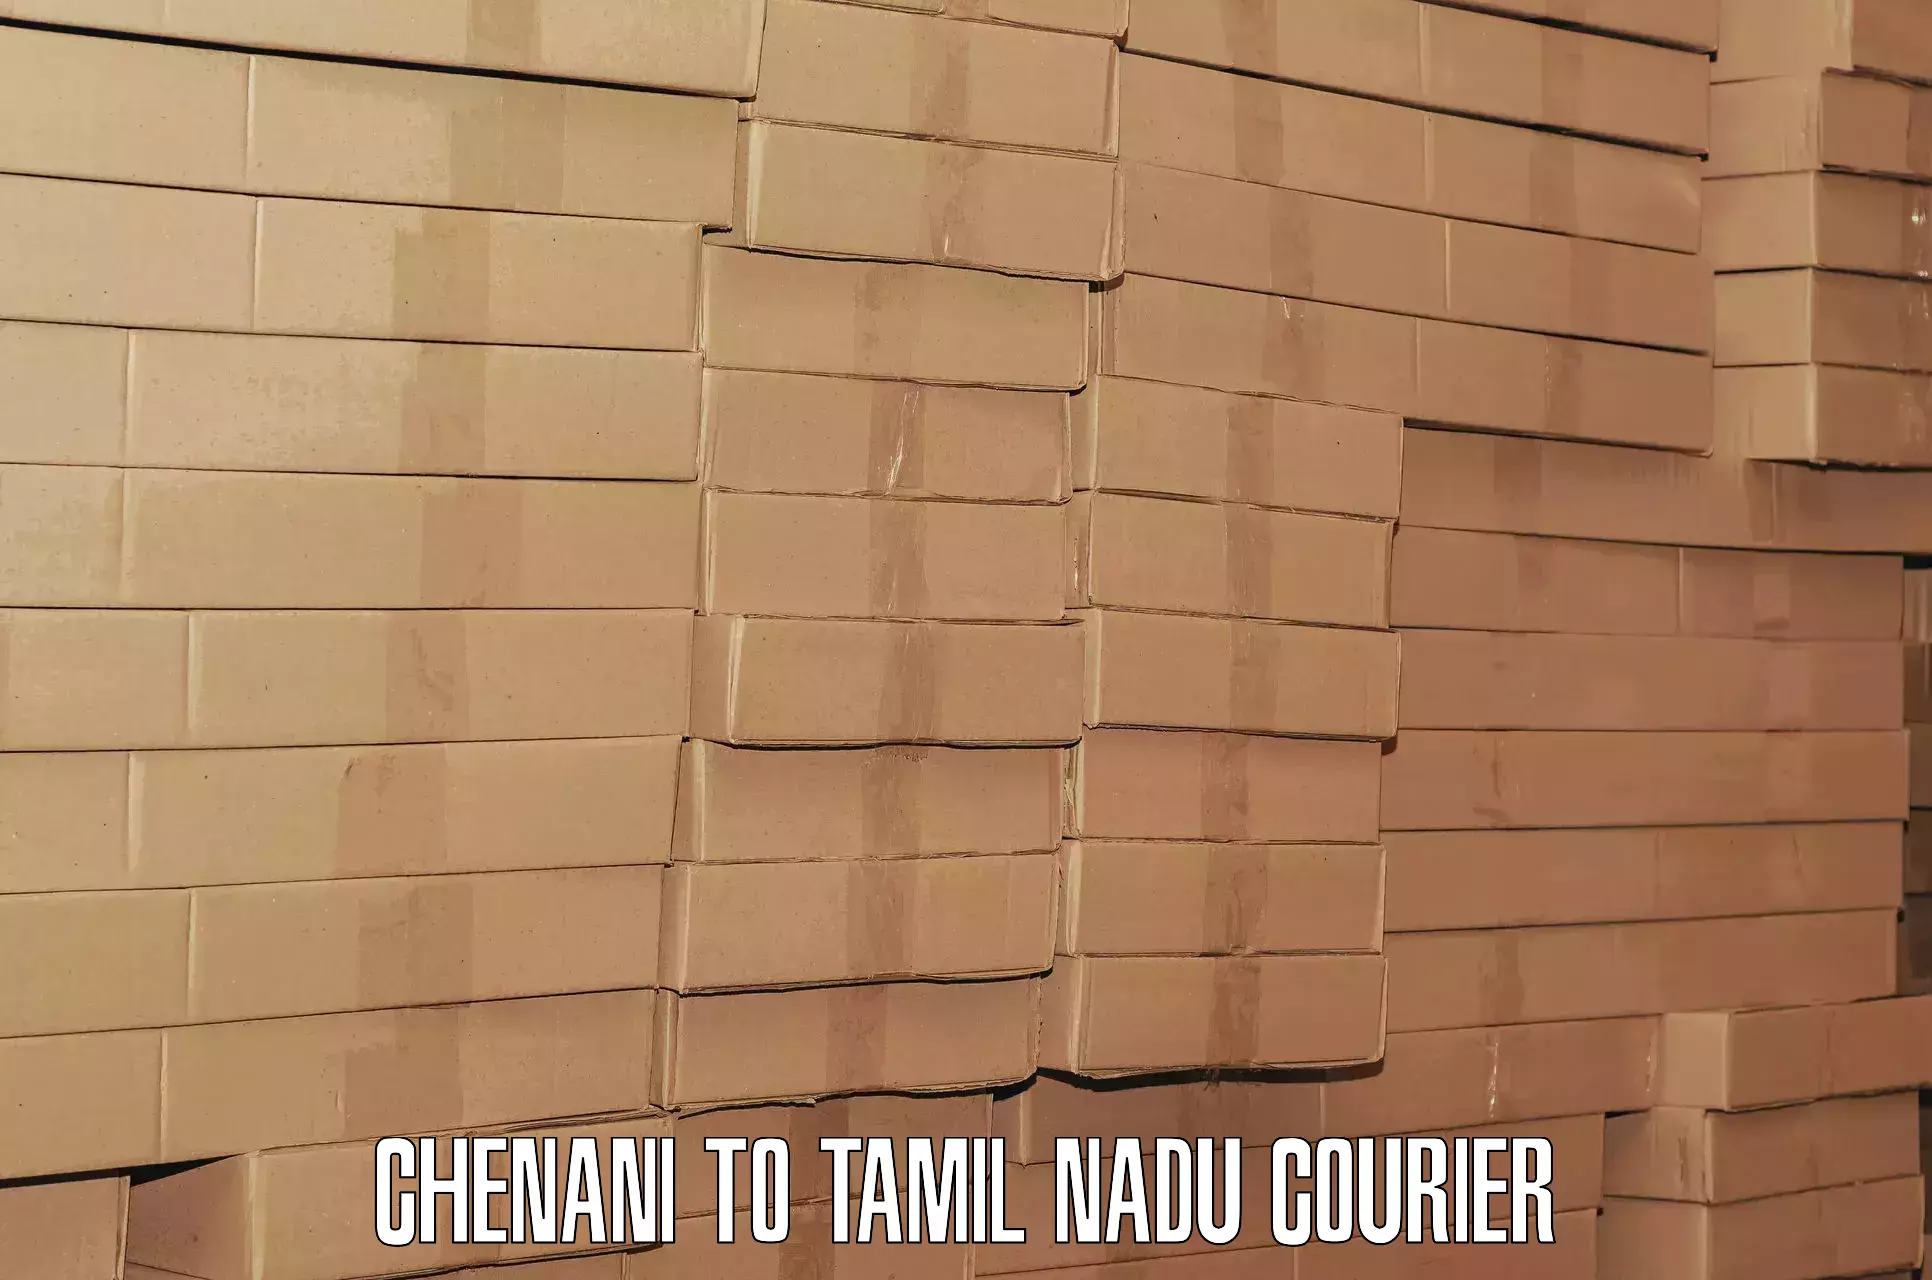 Scheduled baggage courier Chenani to Sankarapuram